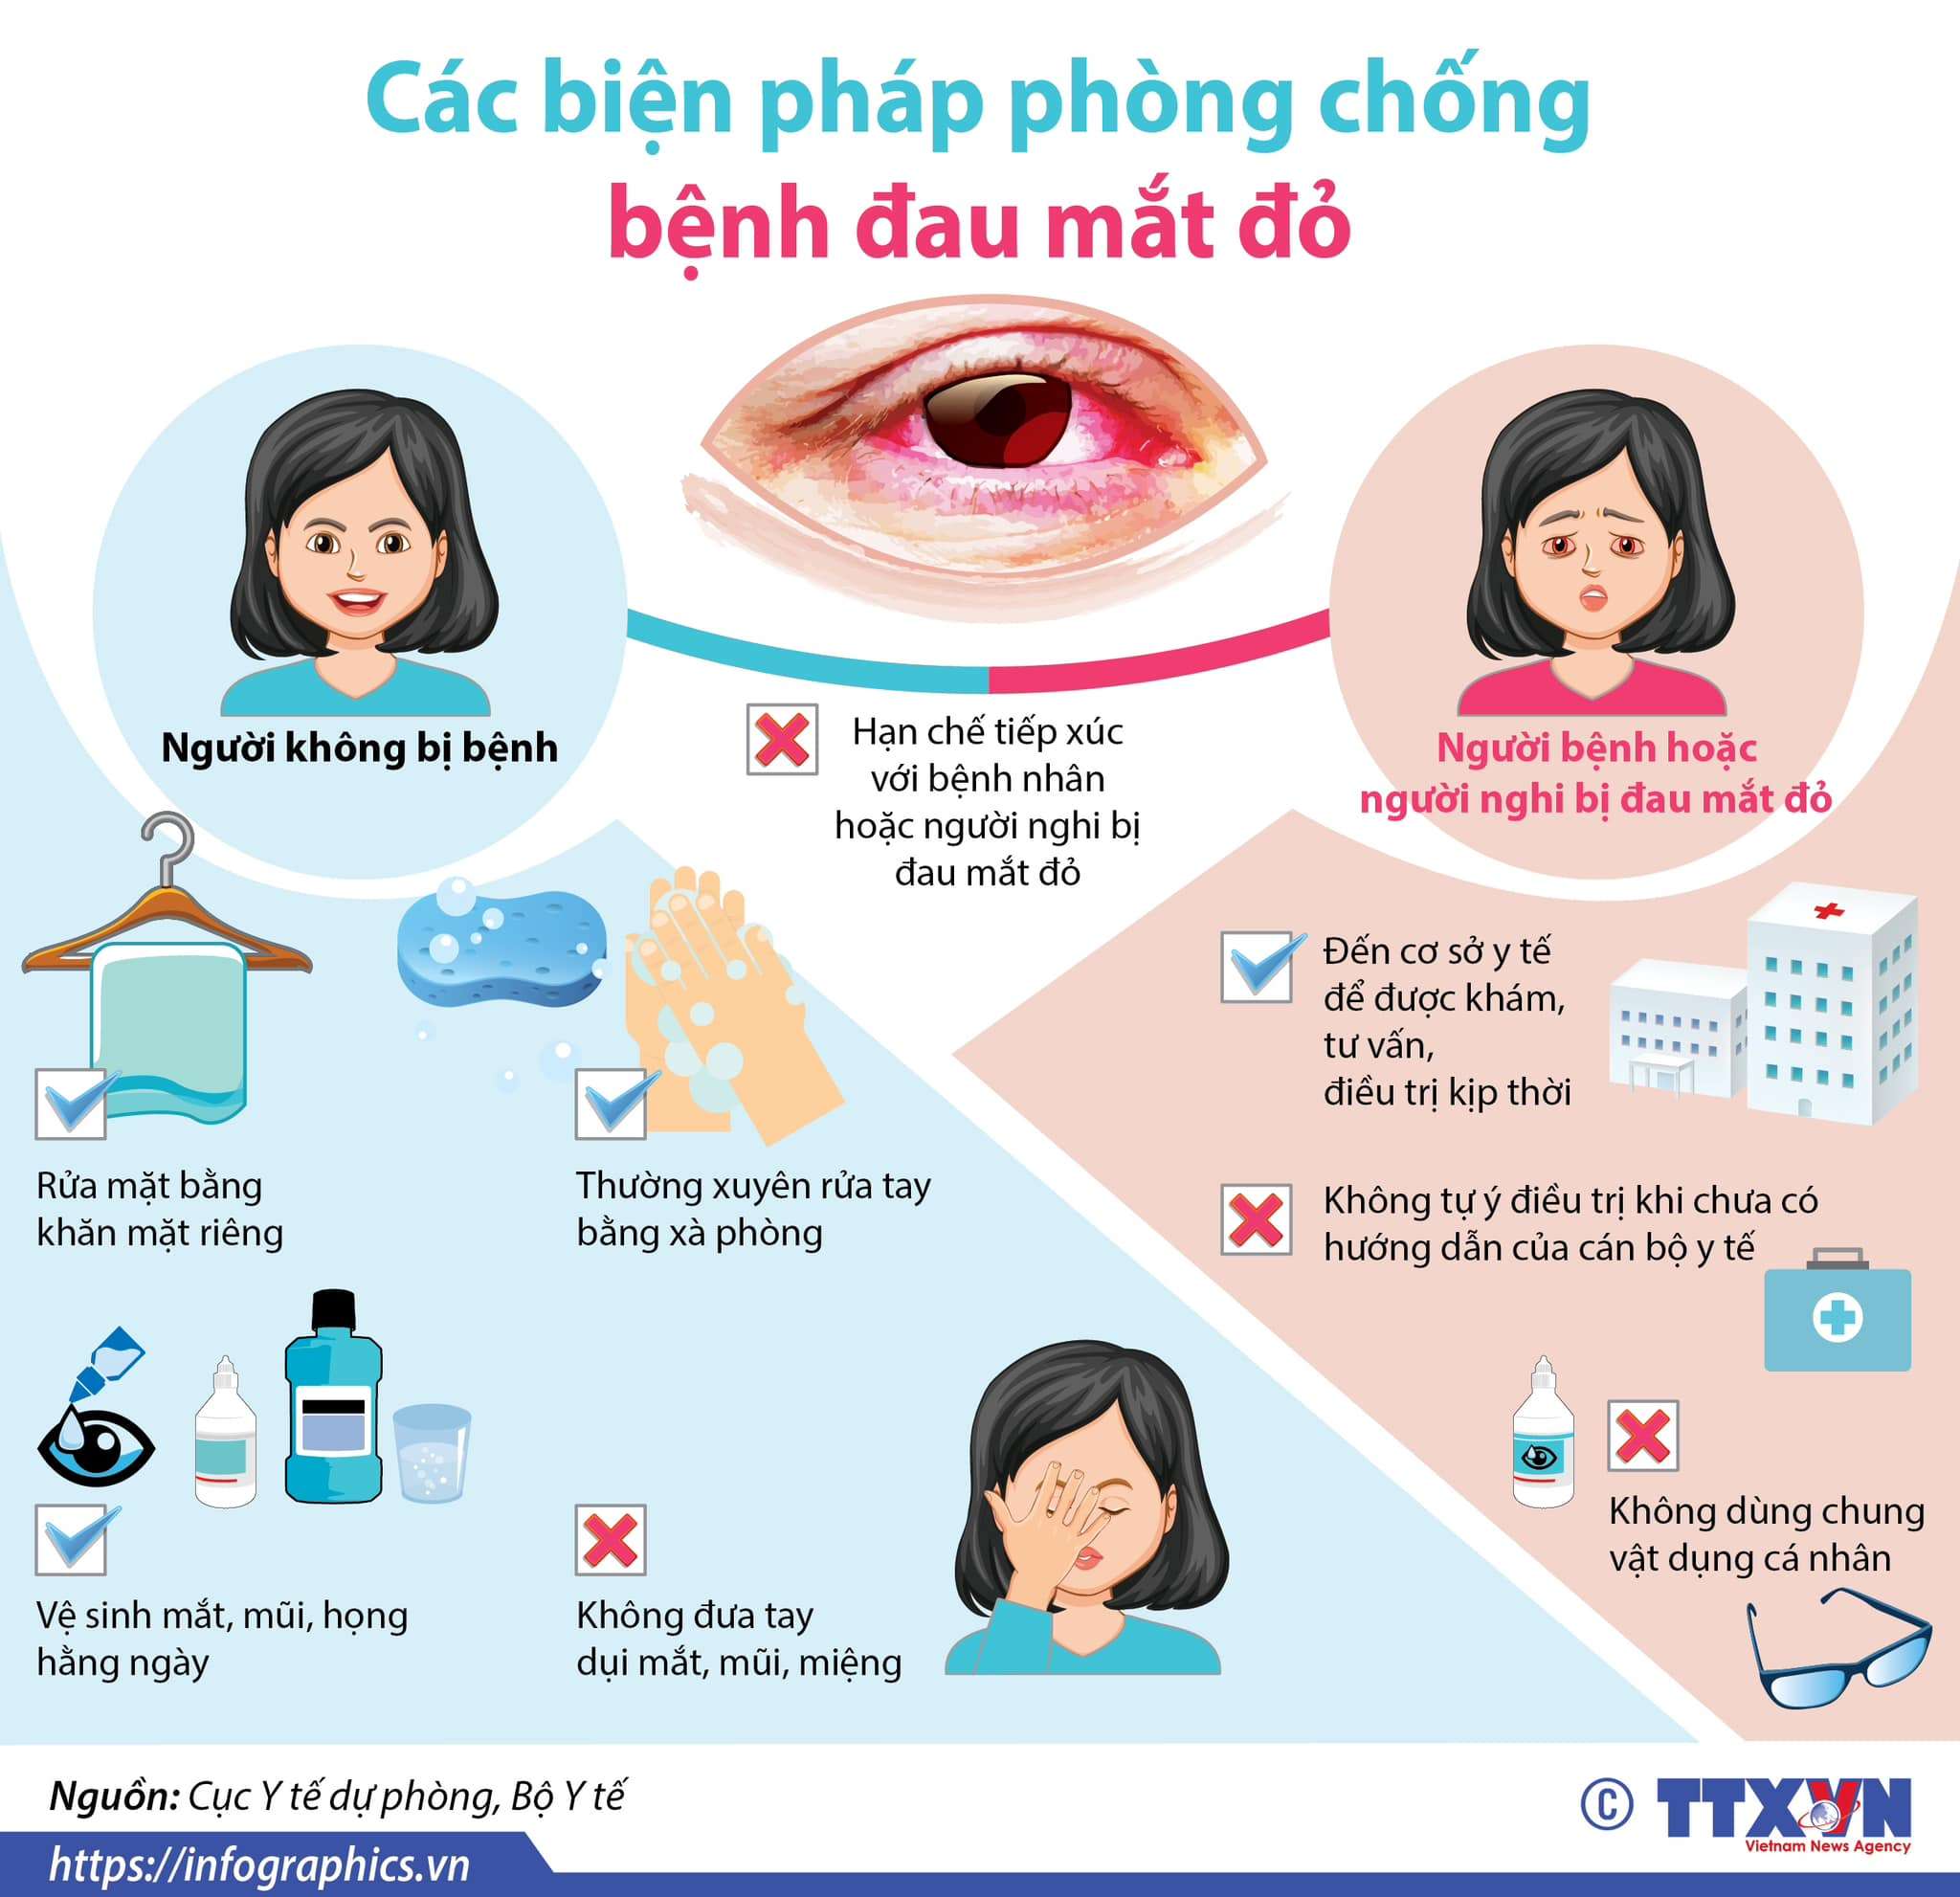 Trường TH Nguyễn Huệ gửi tới các bậc phụ huynh và các em học sinh các biện pháp phòng chống bệnh đau mắt đỏ hiện nay